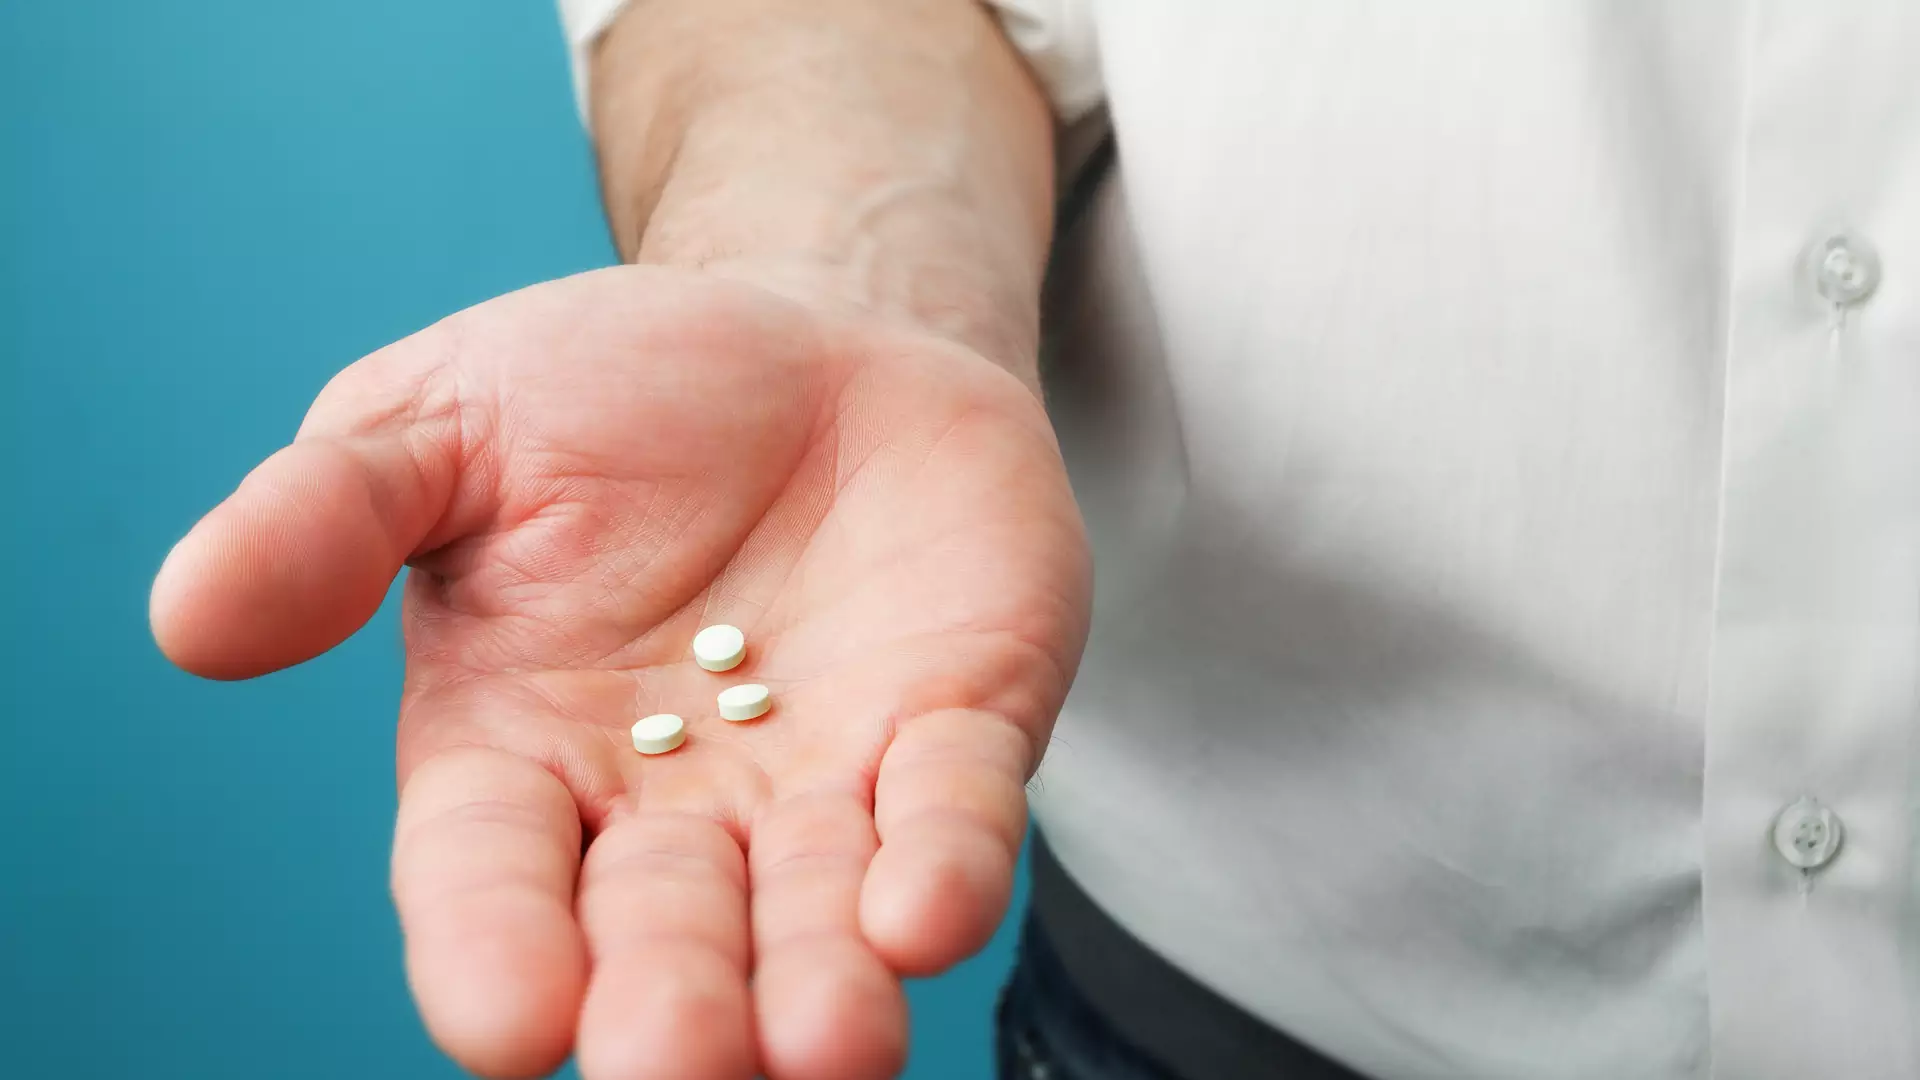 Tabletki antykoncepcyjne dla mężczyzn w 99 proc. zapobiegają ciąży – nowe wyniki badań 